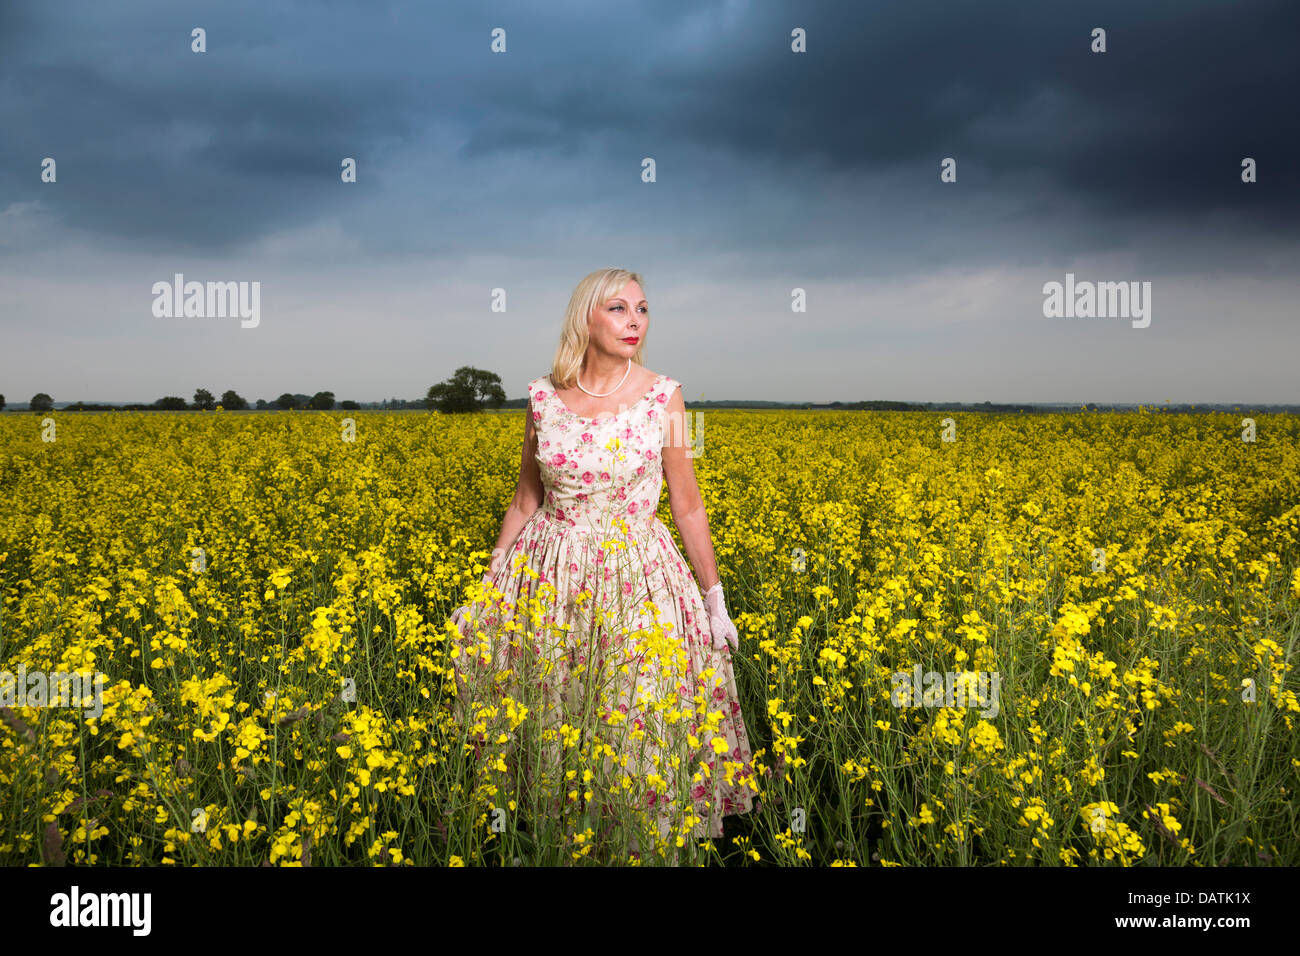 Mujer de pie en el campo en campo abierto con cultivo de oleaginosas Foto de stock